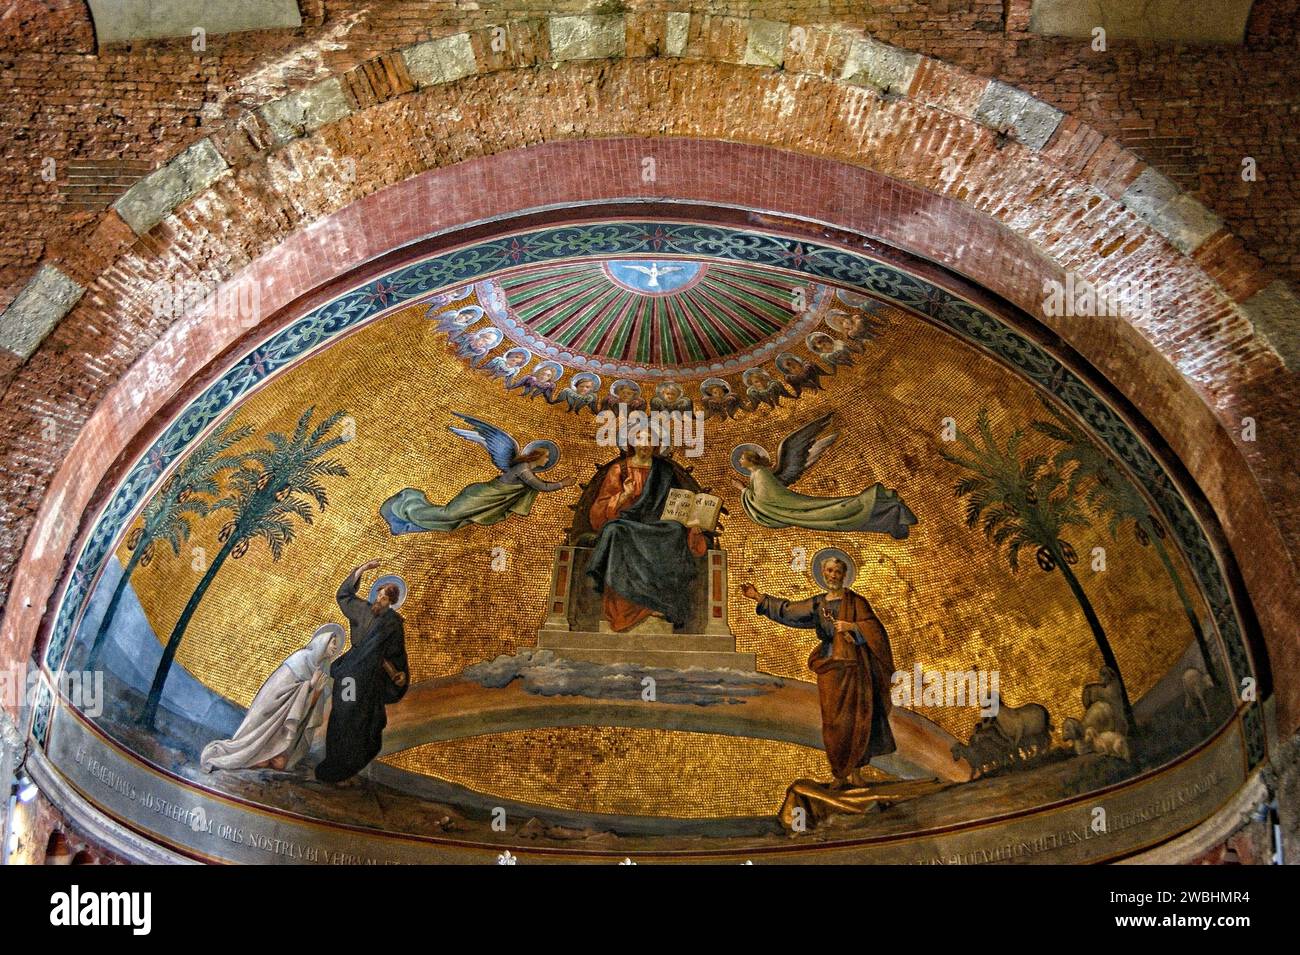 Italien Lombardei Pavia Pieve von San Pietro in Ciel D'Oro Mosaik im Gewölbe | Italien Lombardei Pavia Pieve von San Pietro in Ciel D'Oro Mosaik im Gewölbe Stockfoto